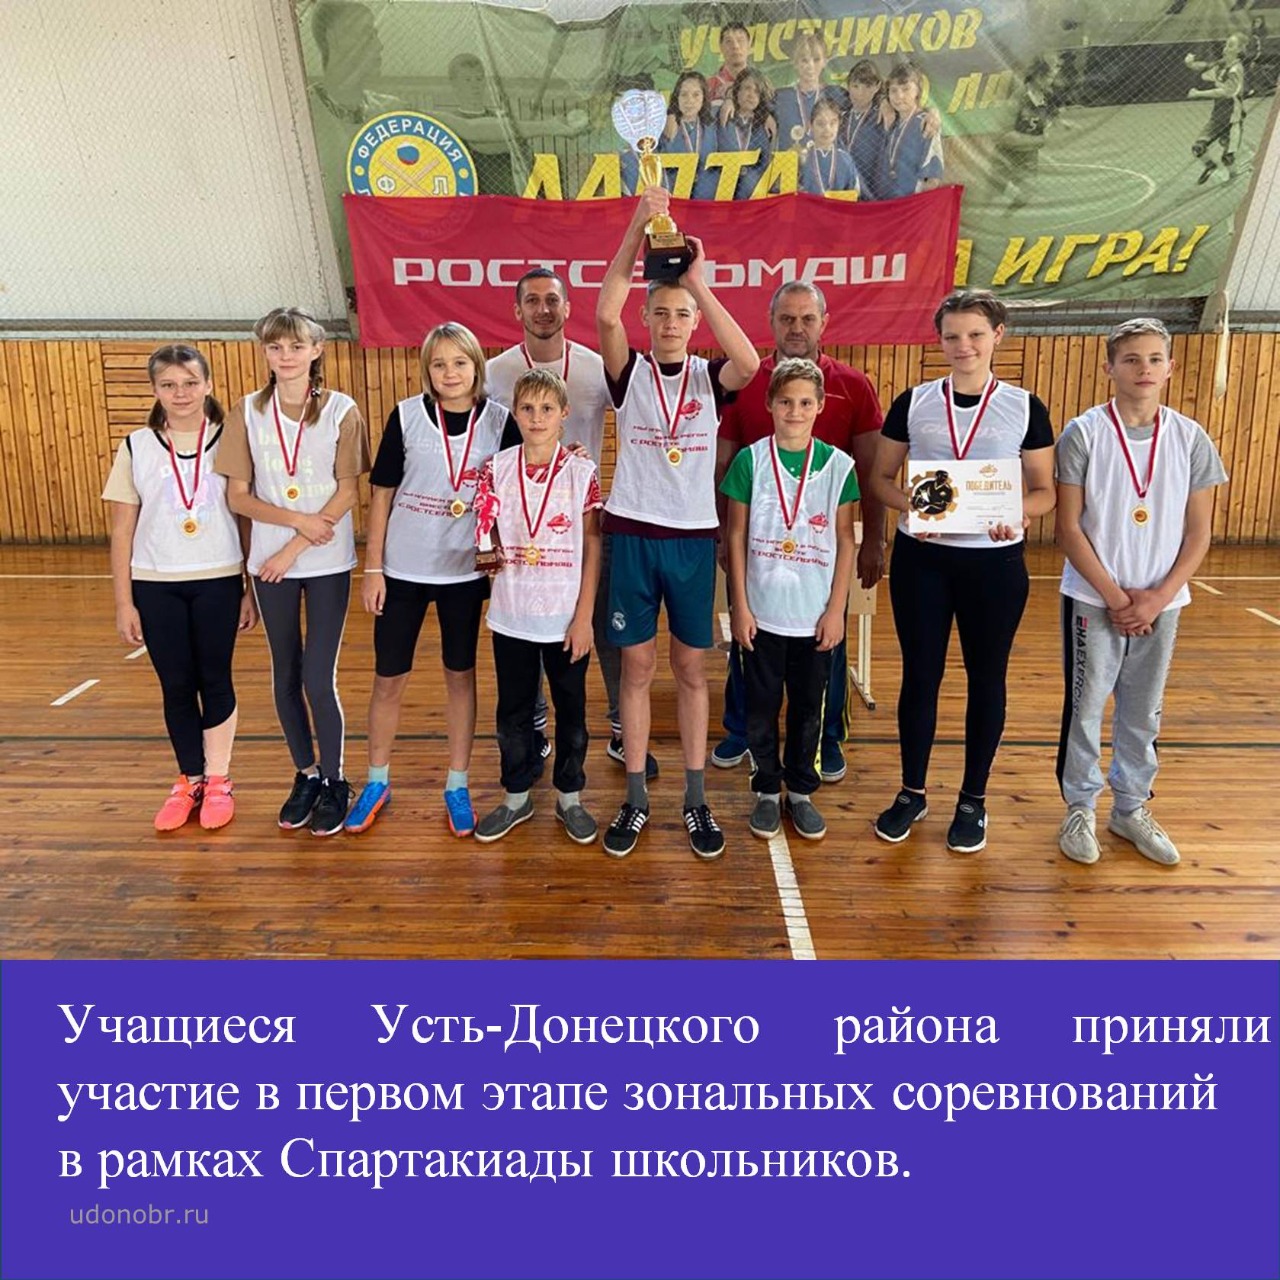 Учащиеся Усть-Донецкого района приняли участие в первом этапе зональных соревнований в рамках Спартакиады школьников